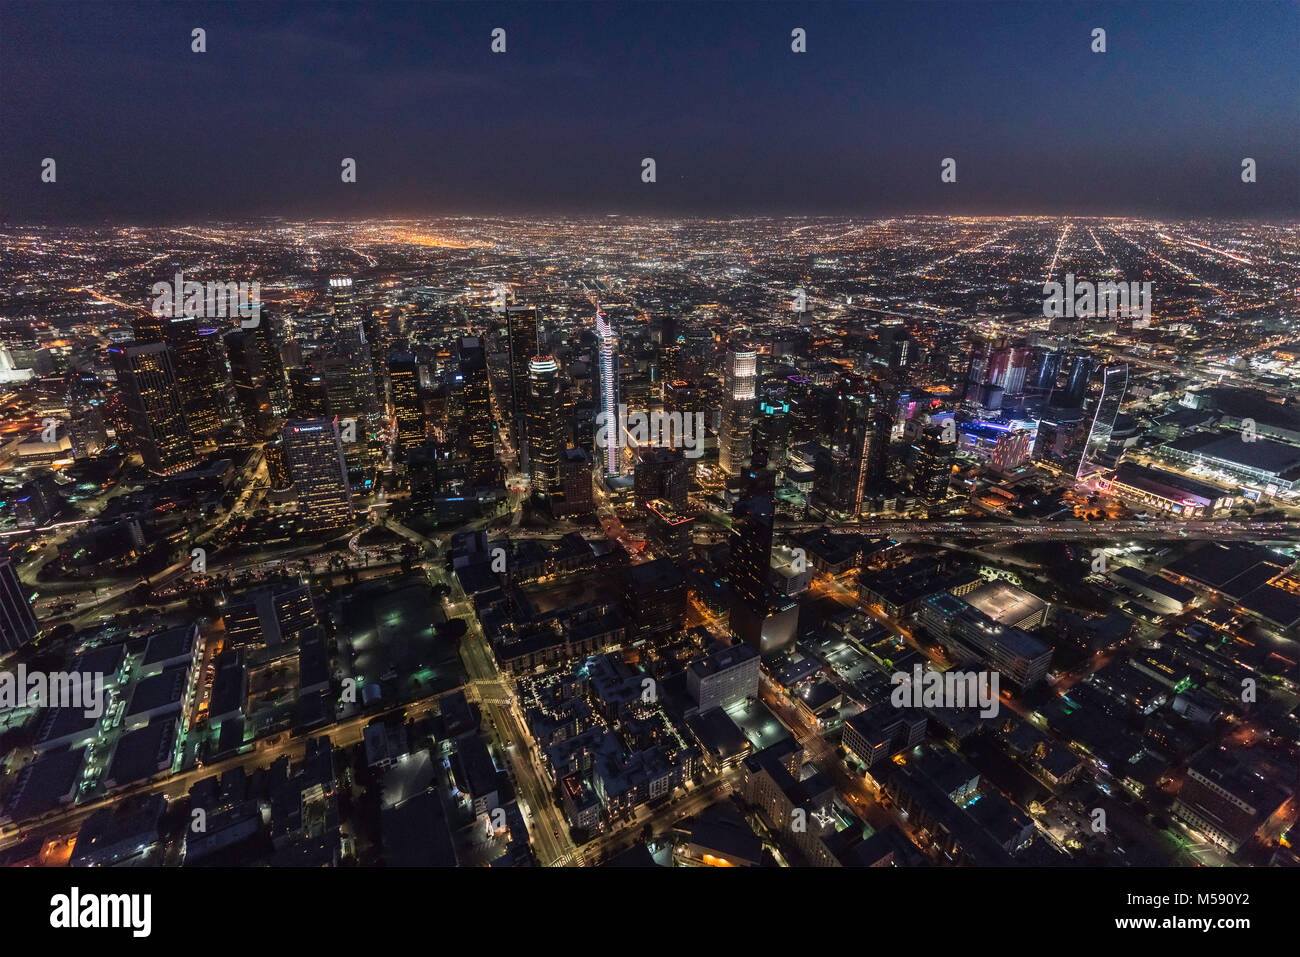 Los Angeles, Californie, USA - 11 Février 2018 : Vue aérienne de nuit sur le centre-ville de Tours et de rues dans le sud de la Californie. Banque D'Images